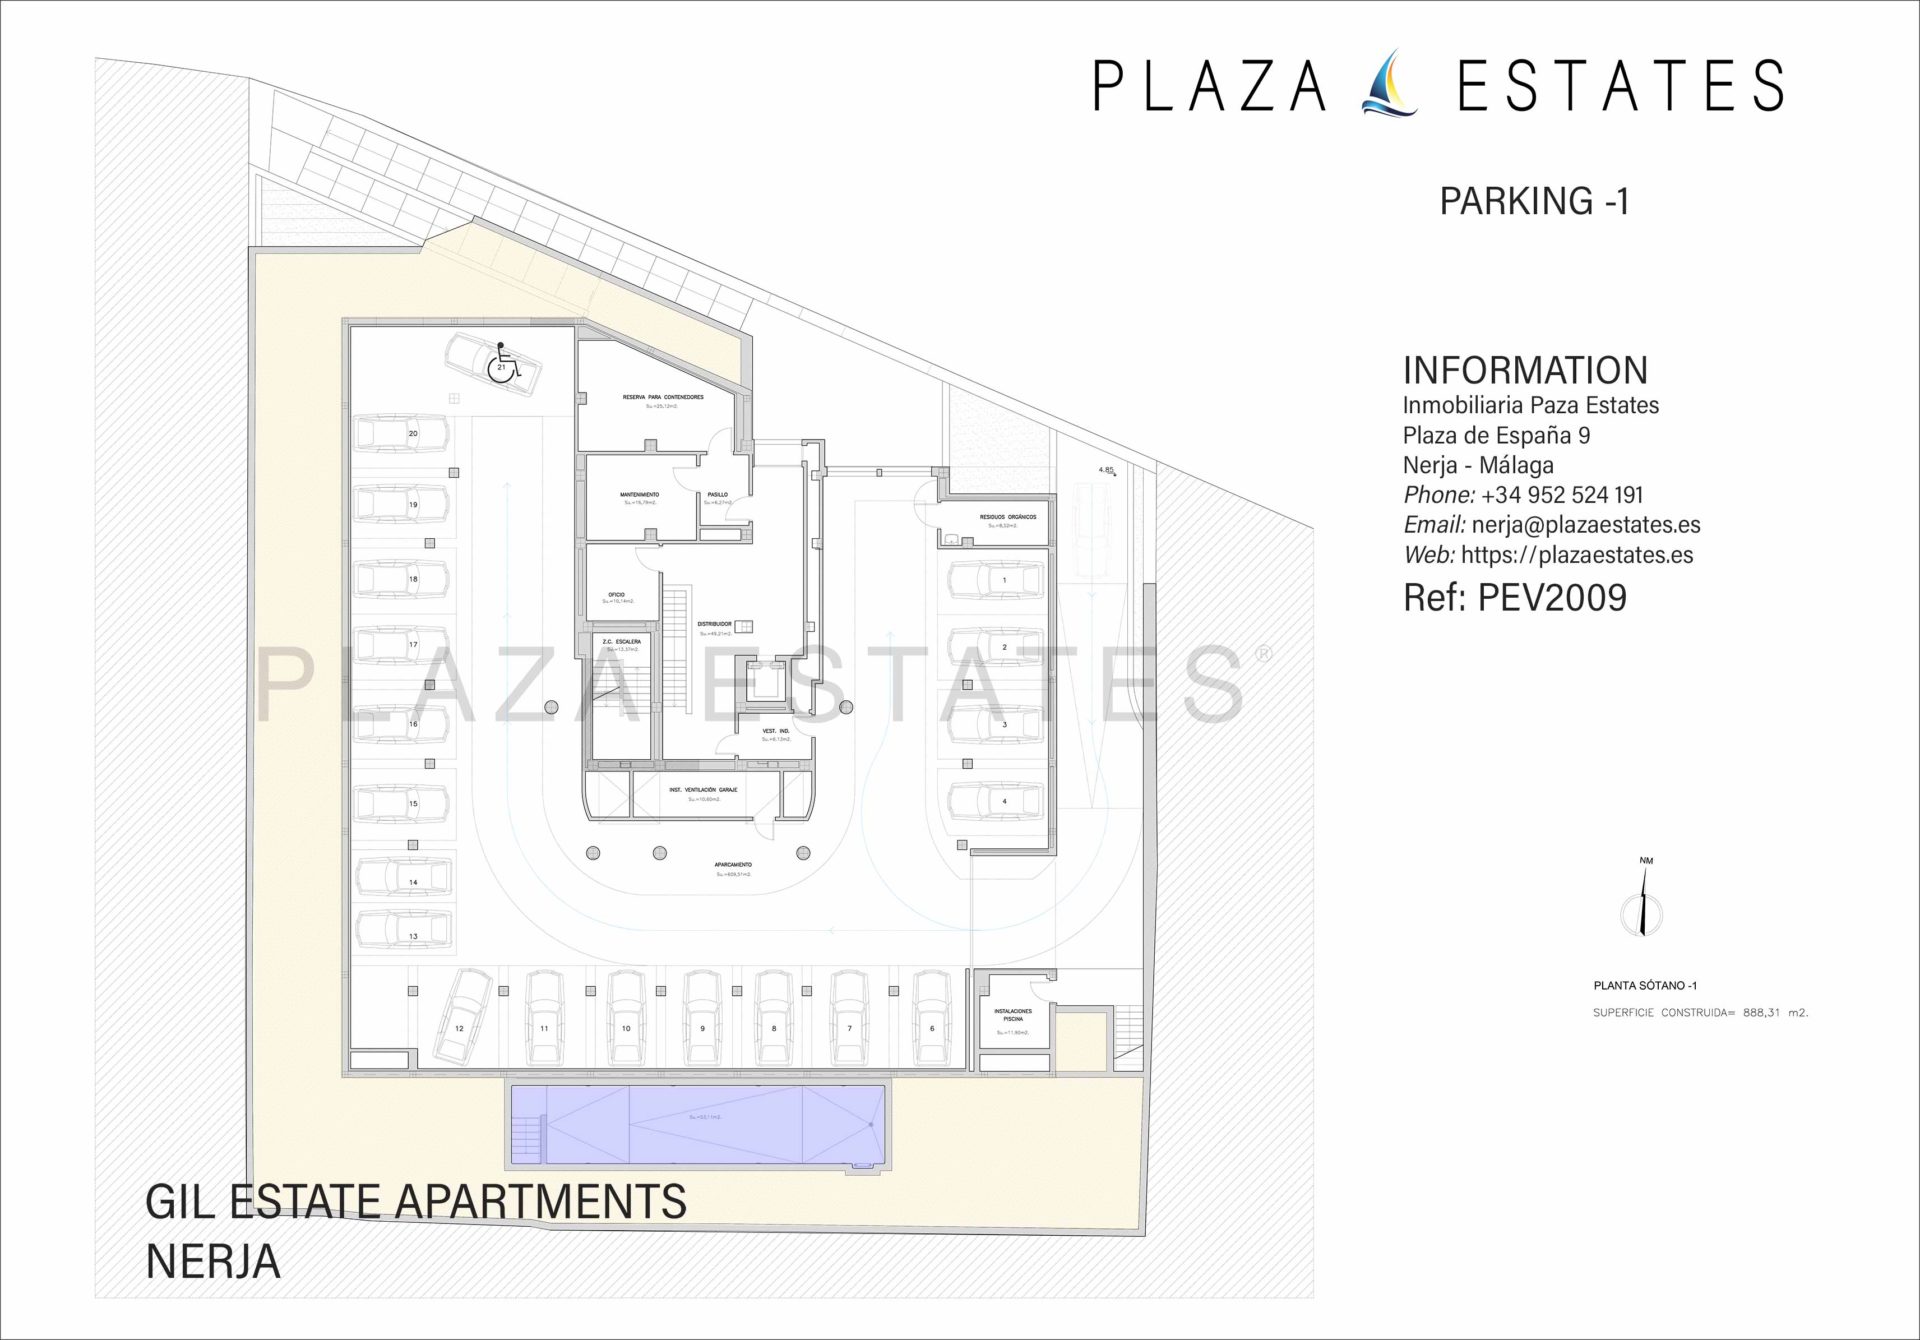 Gil Estate Apartments for sale in Nerja sotano-1